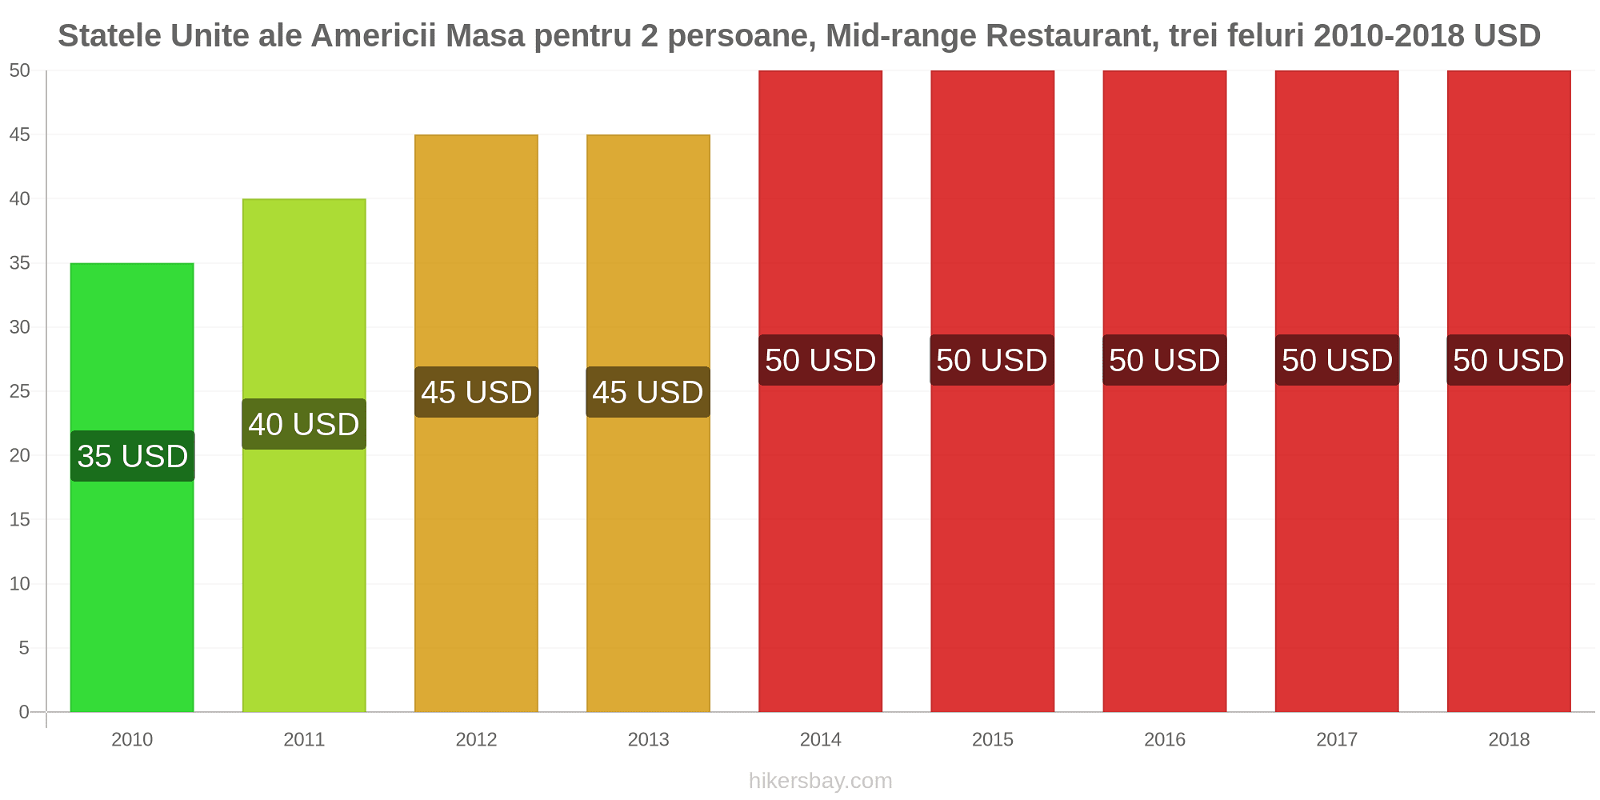 Statele Unite ale Americii schimbări de prețuri Masă pentru 2 persoane, restaurant de gamă medie, trei feluri de mâncare hikersbay.com